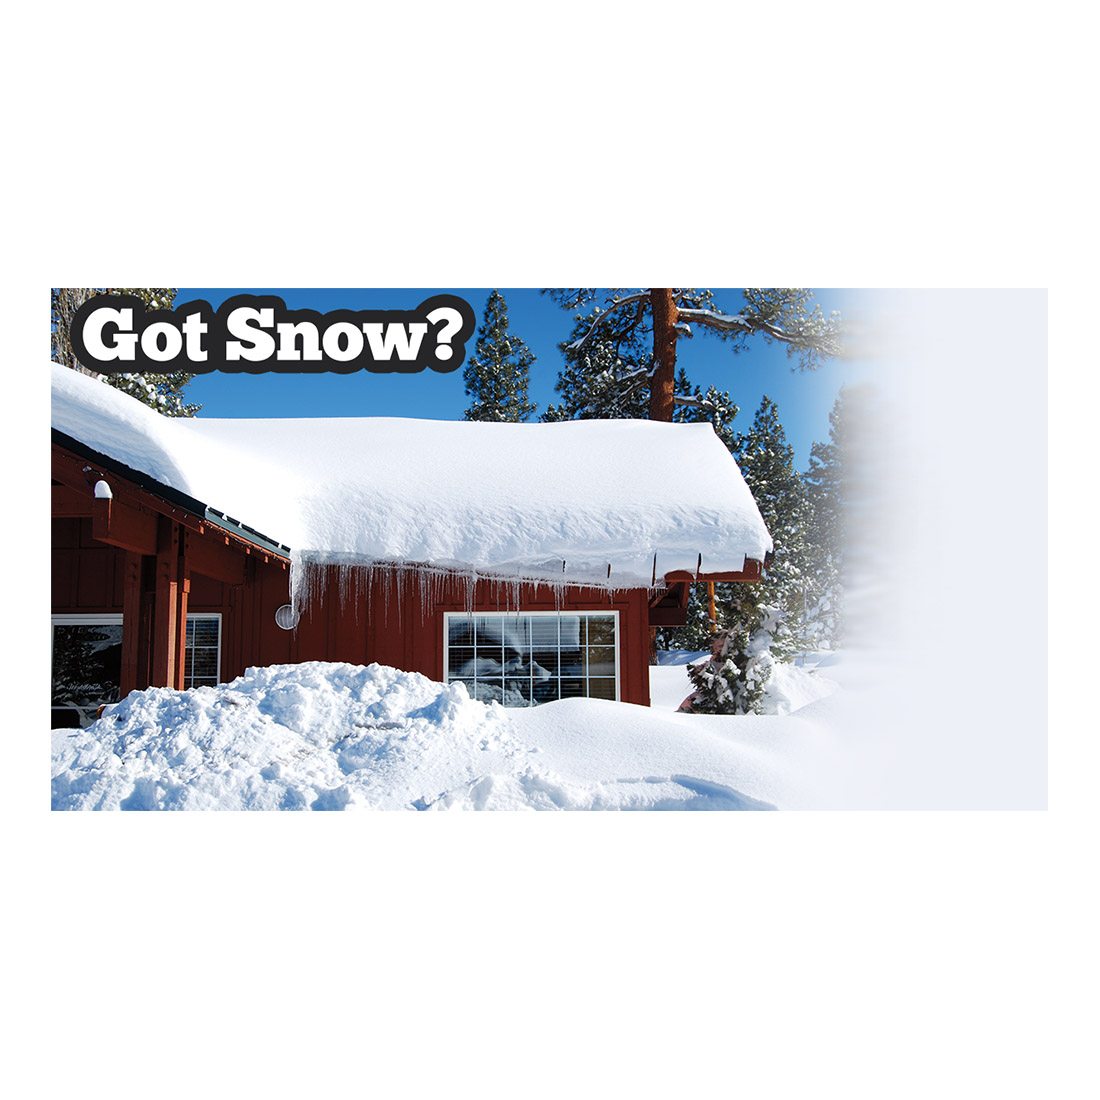 Got Snow Design Suite - Facebook Ad View